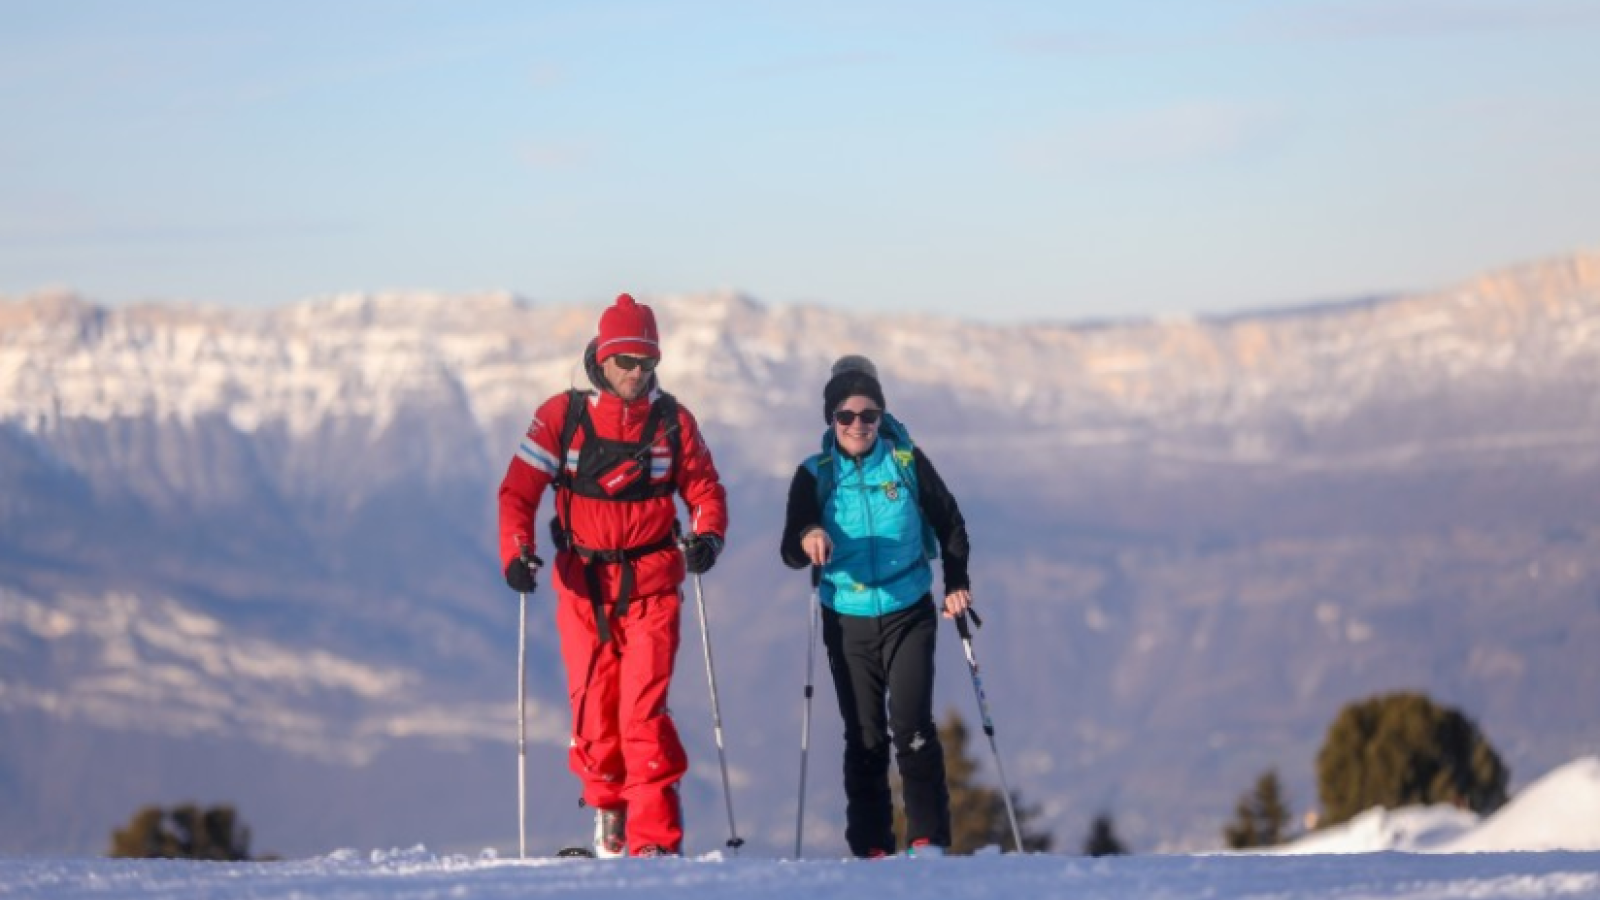 Ski touring with ski teacher